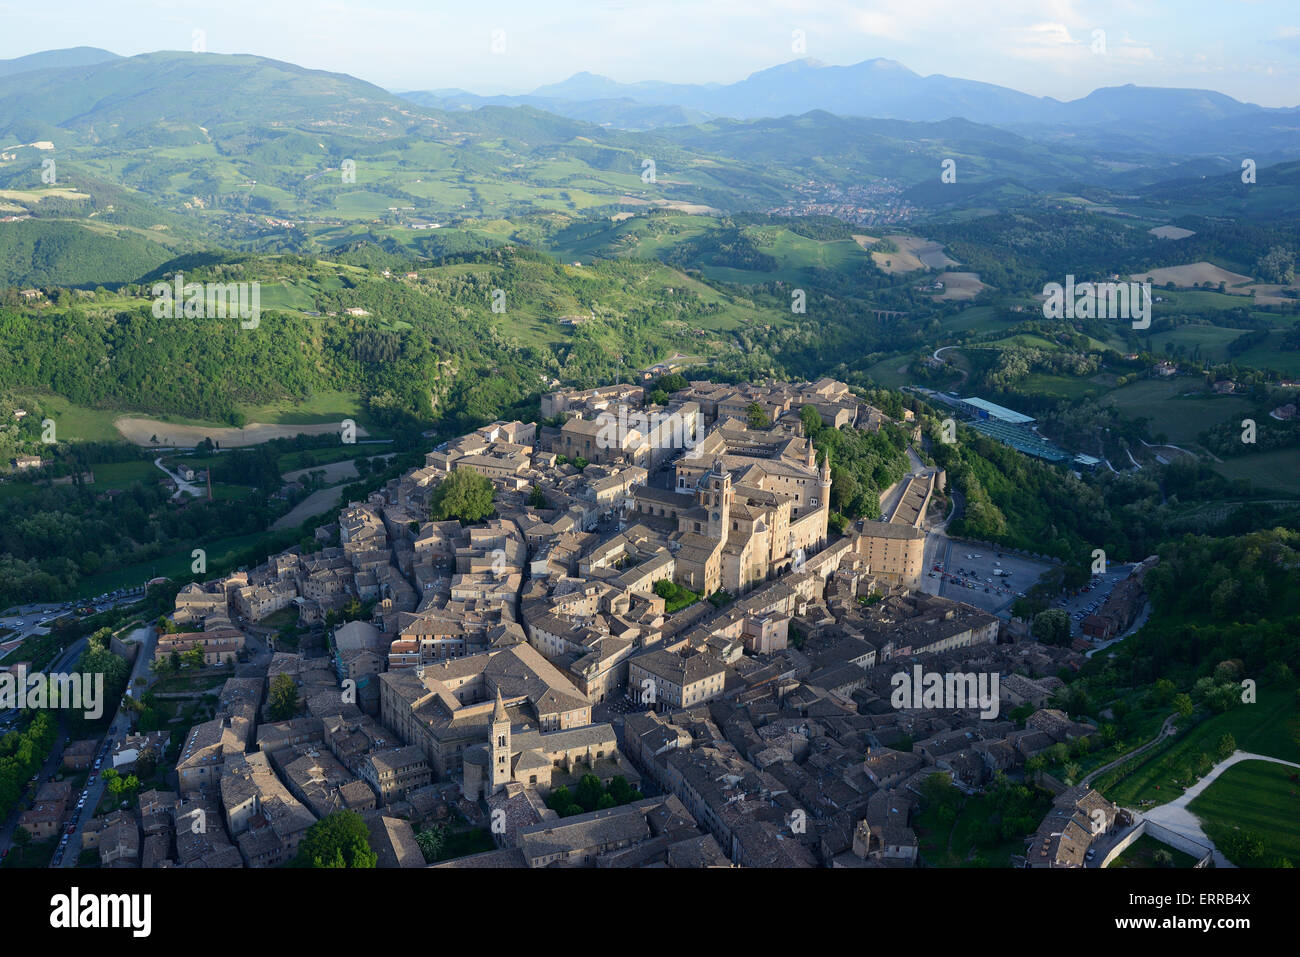 LUFTAUFNAHME. Malerische mittelalterliche Stadt in einer Umgebung von grünen Hügeln. Es ist ein UNESCO-Weltkulturerbe. Urbino, Provinz Pesaro und Urbino, Marken, Italien. Stockfoto